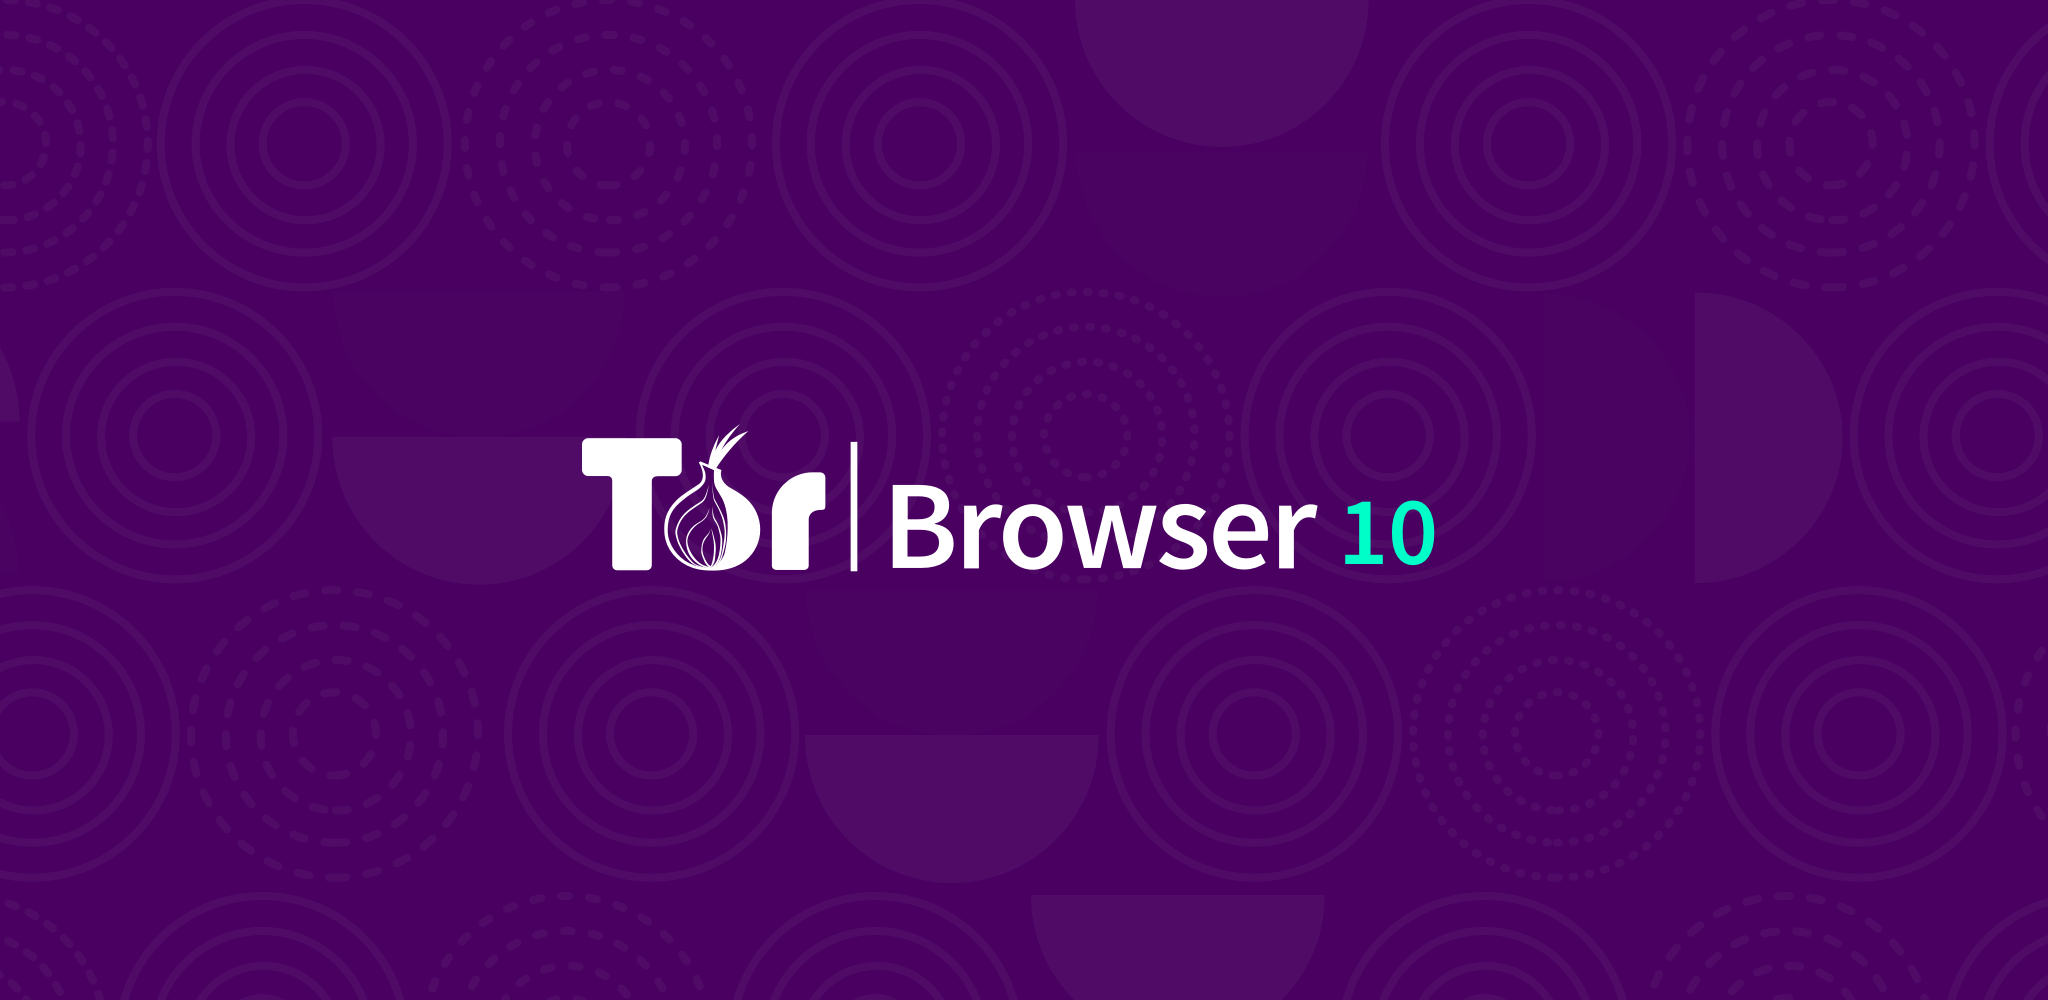 Latest version tor browser гирда тор браузер скачать русскую версию бесплатно gidra